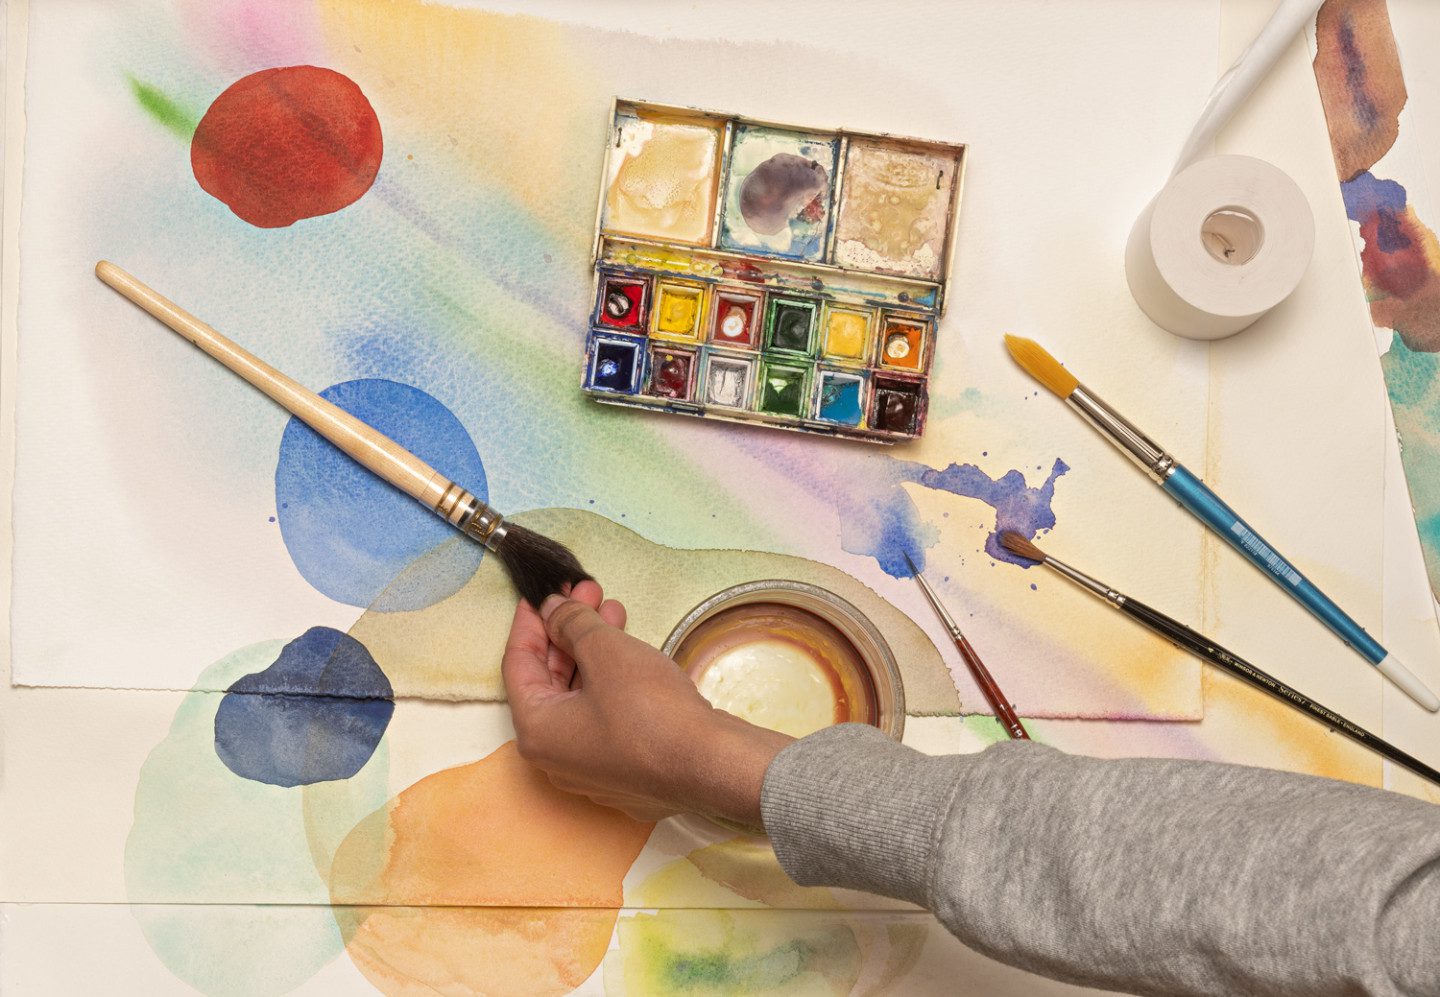 En låda med redskap och material för att måla akvarell, penslar och färgtuber